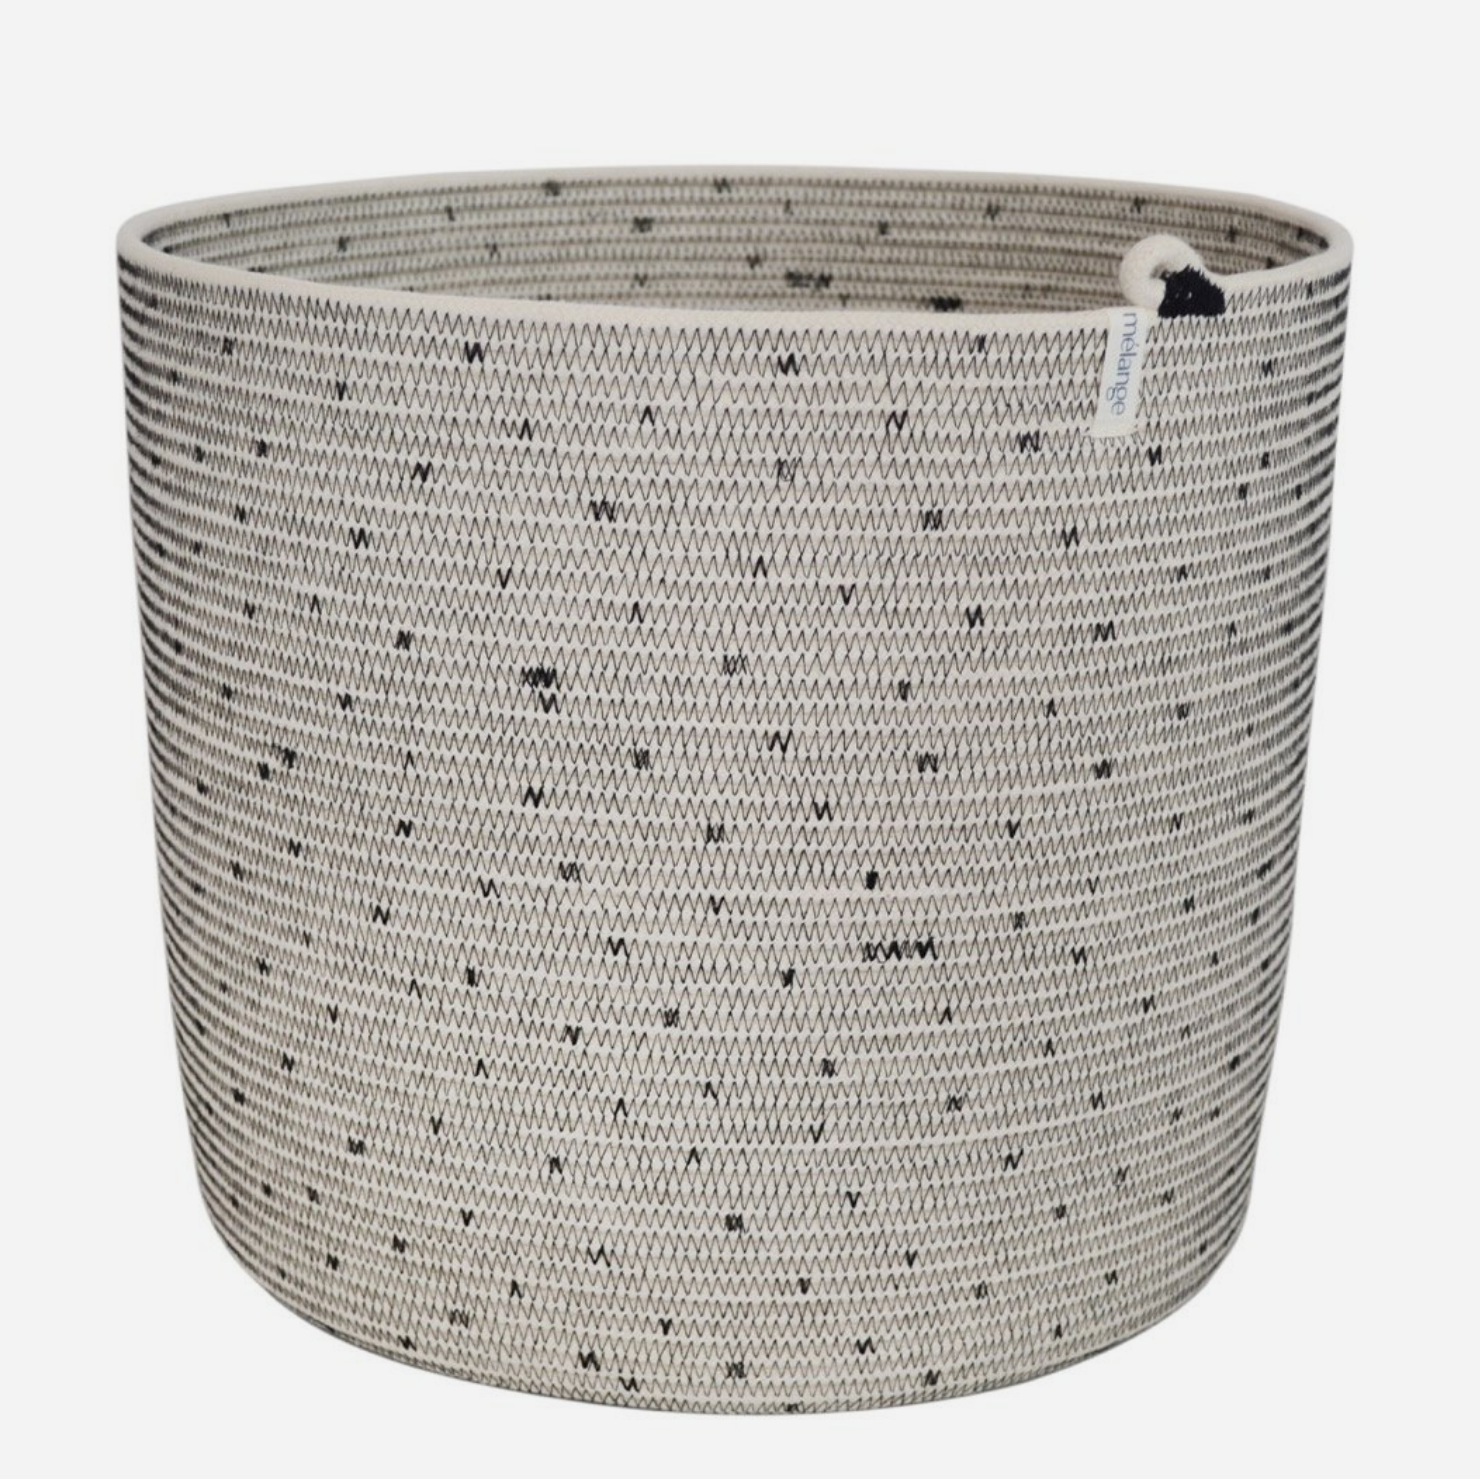 Cylinder Basket - Stitched Polka Dot